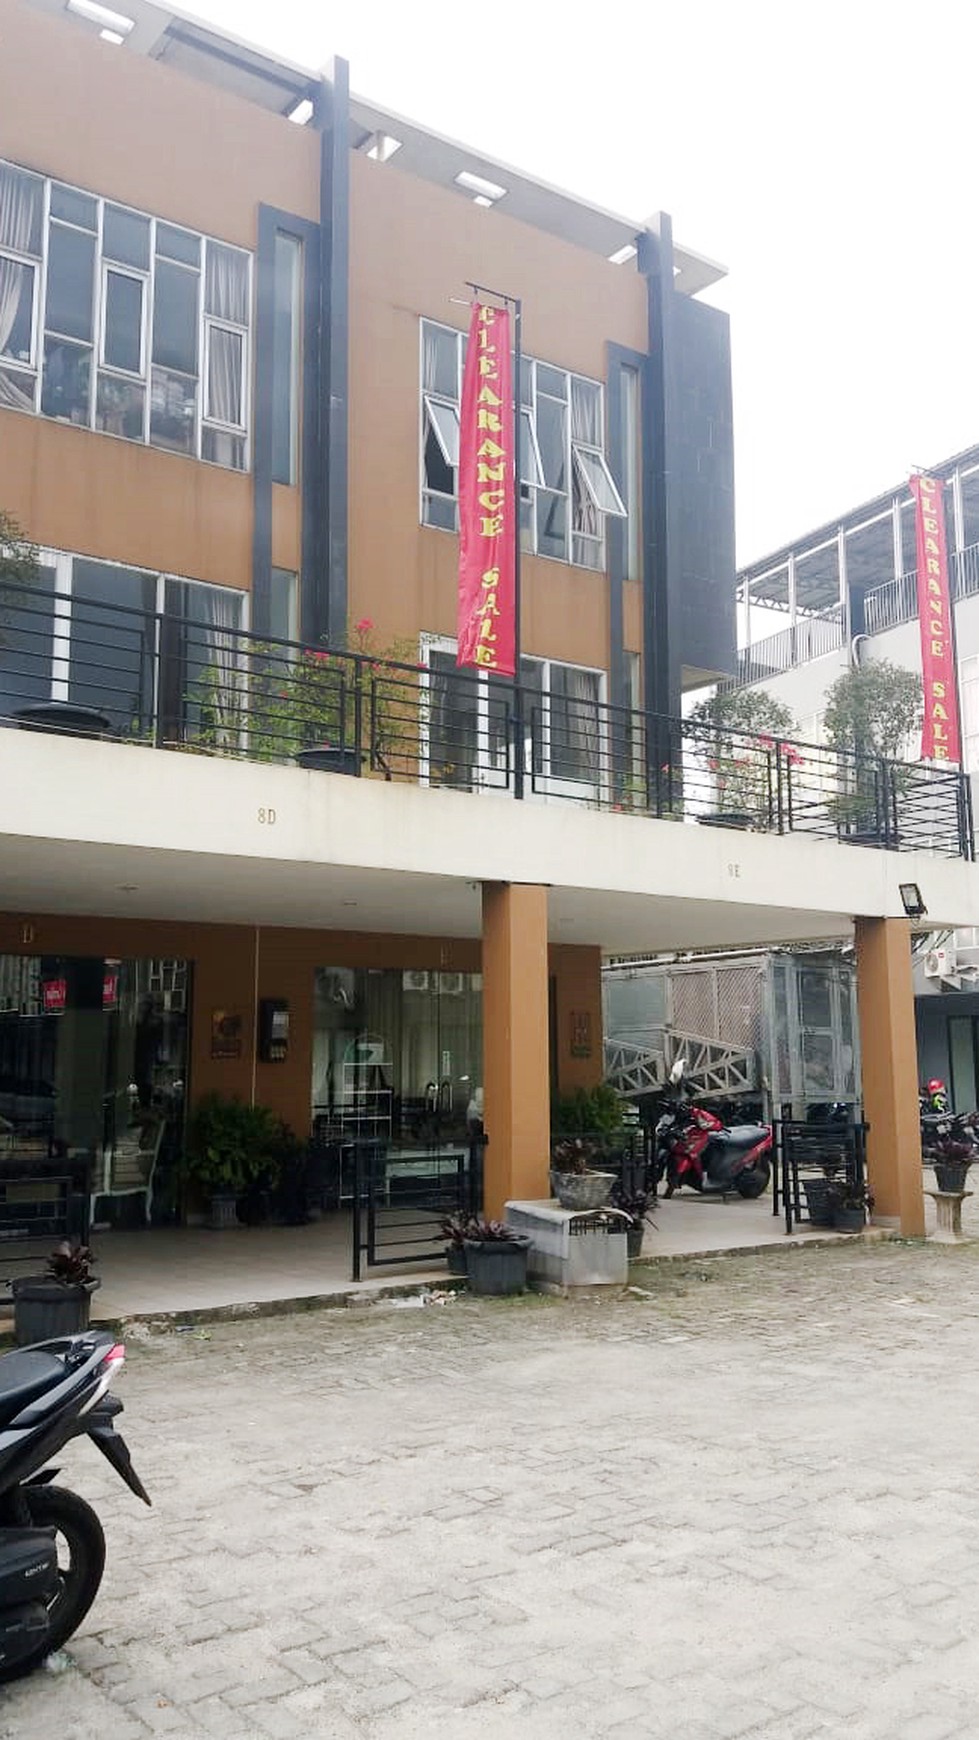 Dijual Ruko Bintaro 8, Lokasi Strategis Jombang Raya, Ciputat Tangerang Selatan